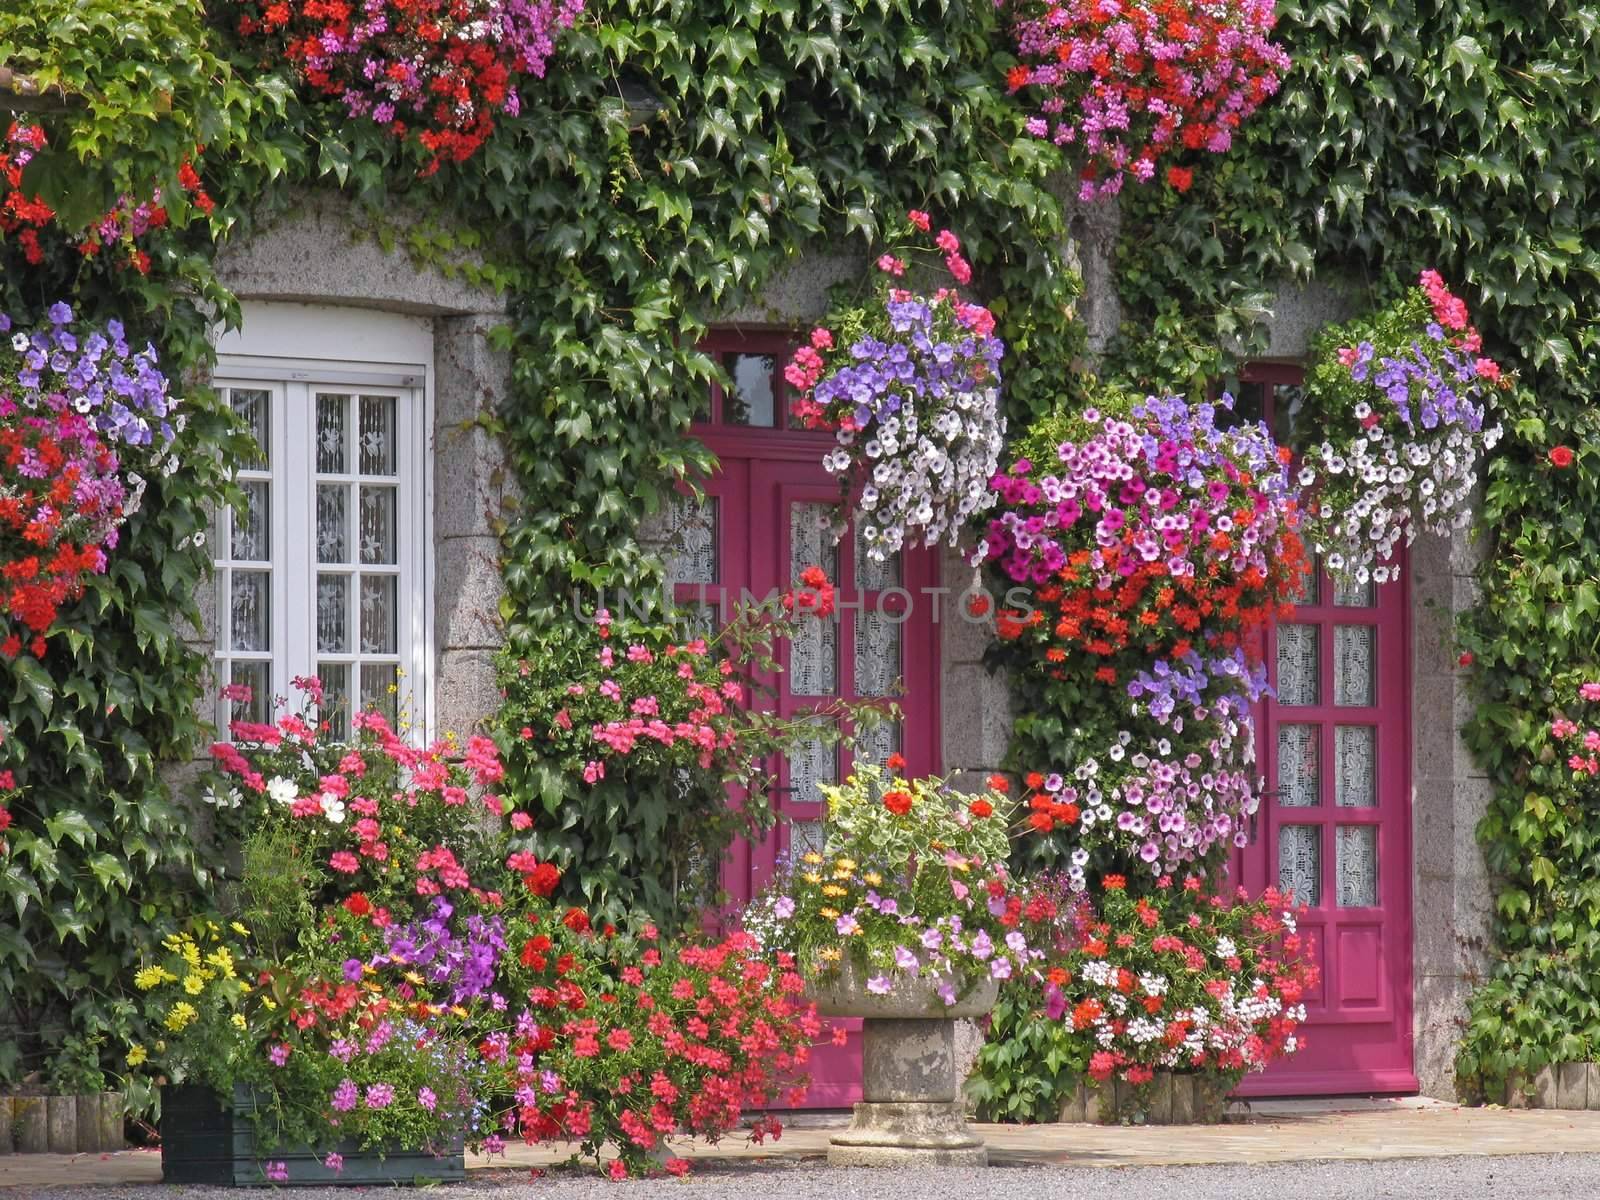 Le Haut de la Lande, House with flowers, Brittany by Natureandmore